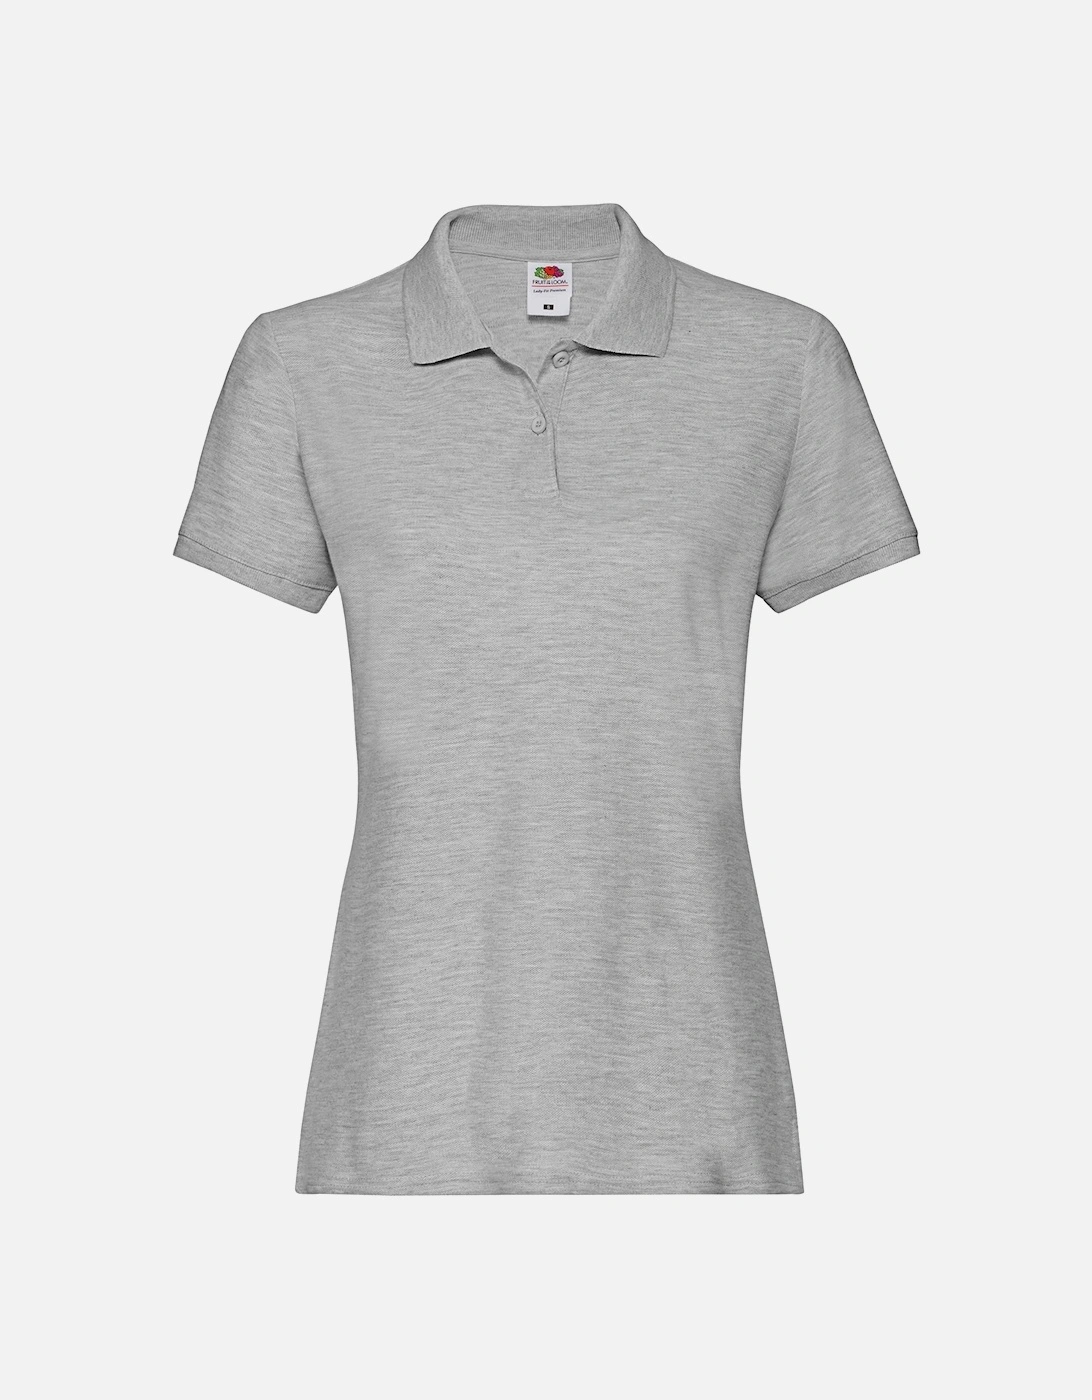 Womens/Ladies Premium Polo Shirt, 4 of 3